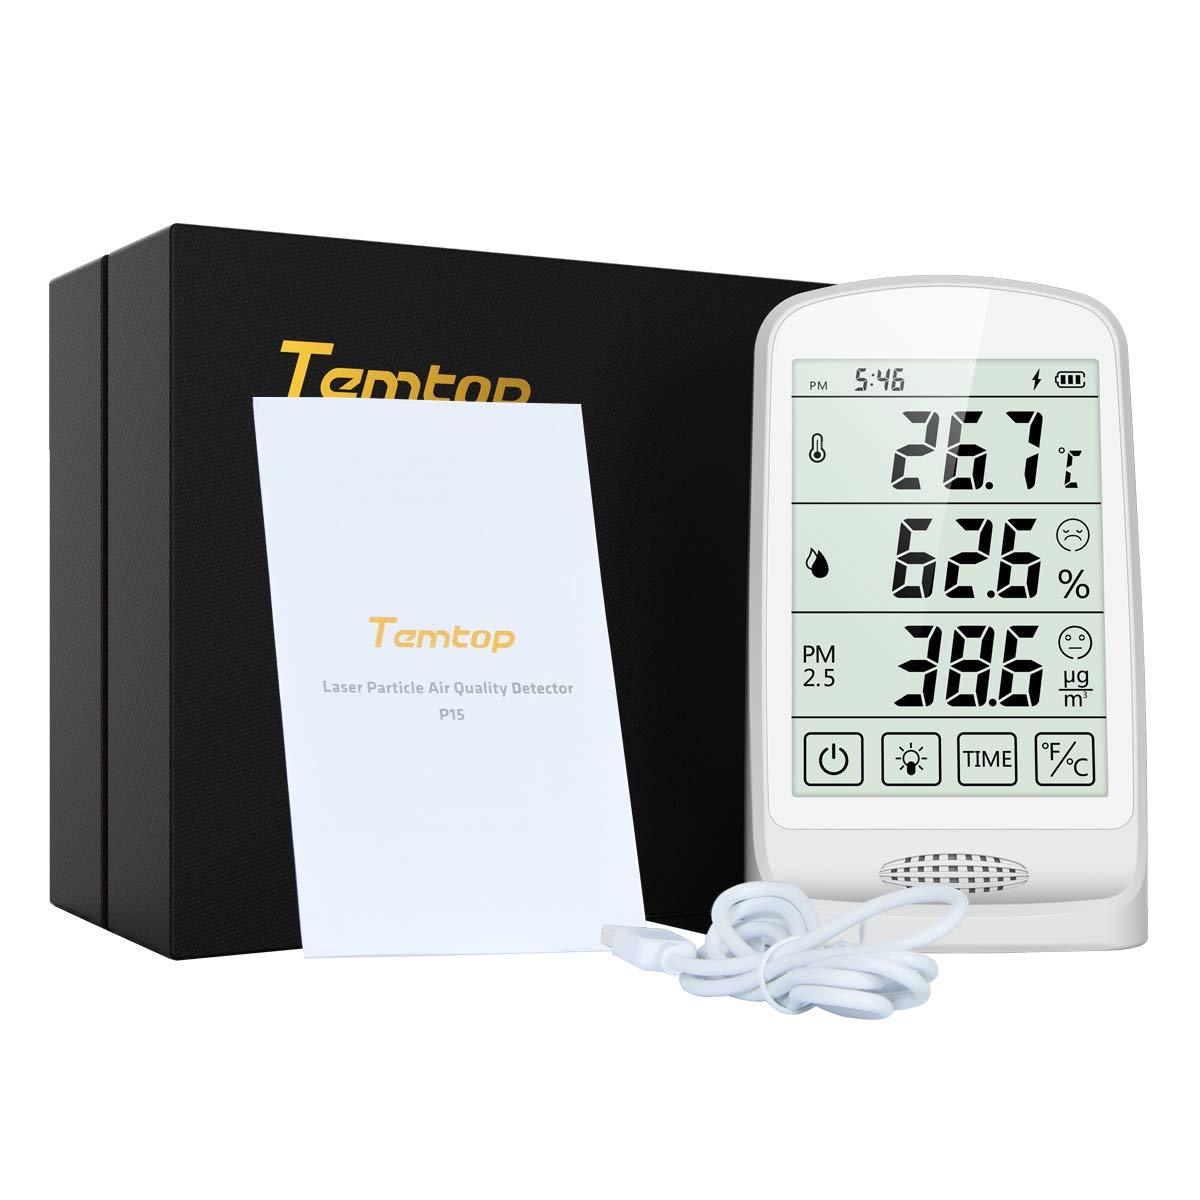 Monitor de calidad del aire Temtop P15, detección y visualización en tiempo real de temperatura y humedad PM2.5 AQI